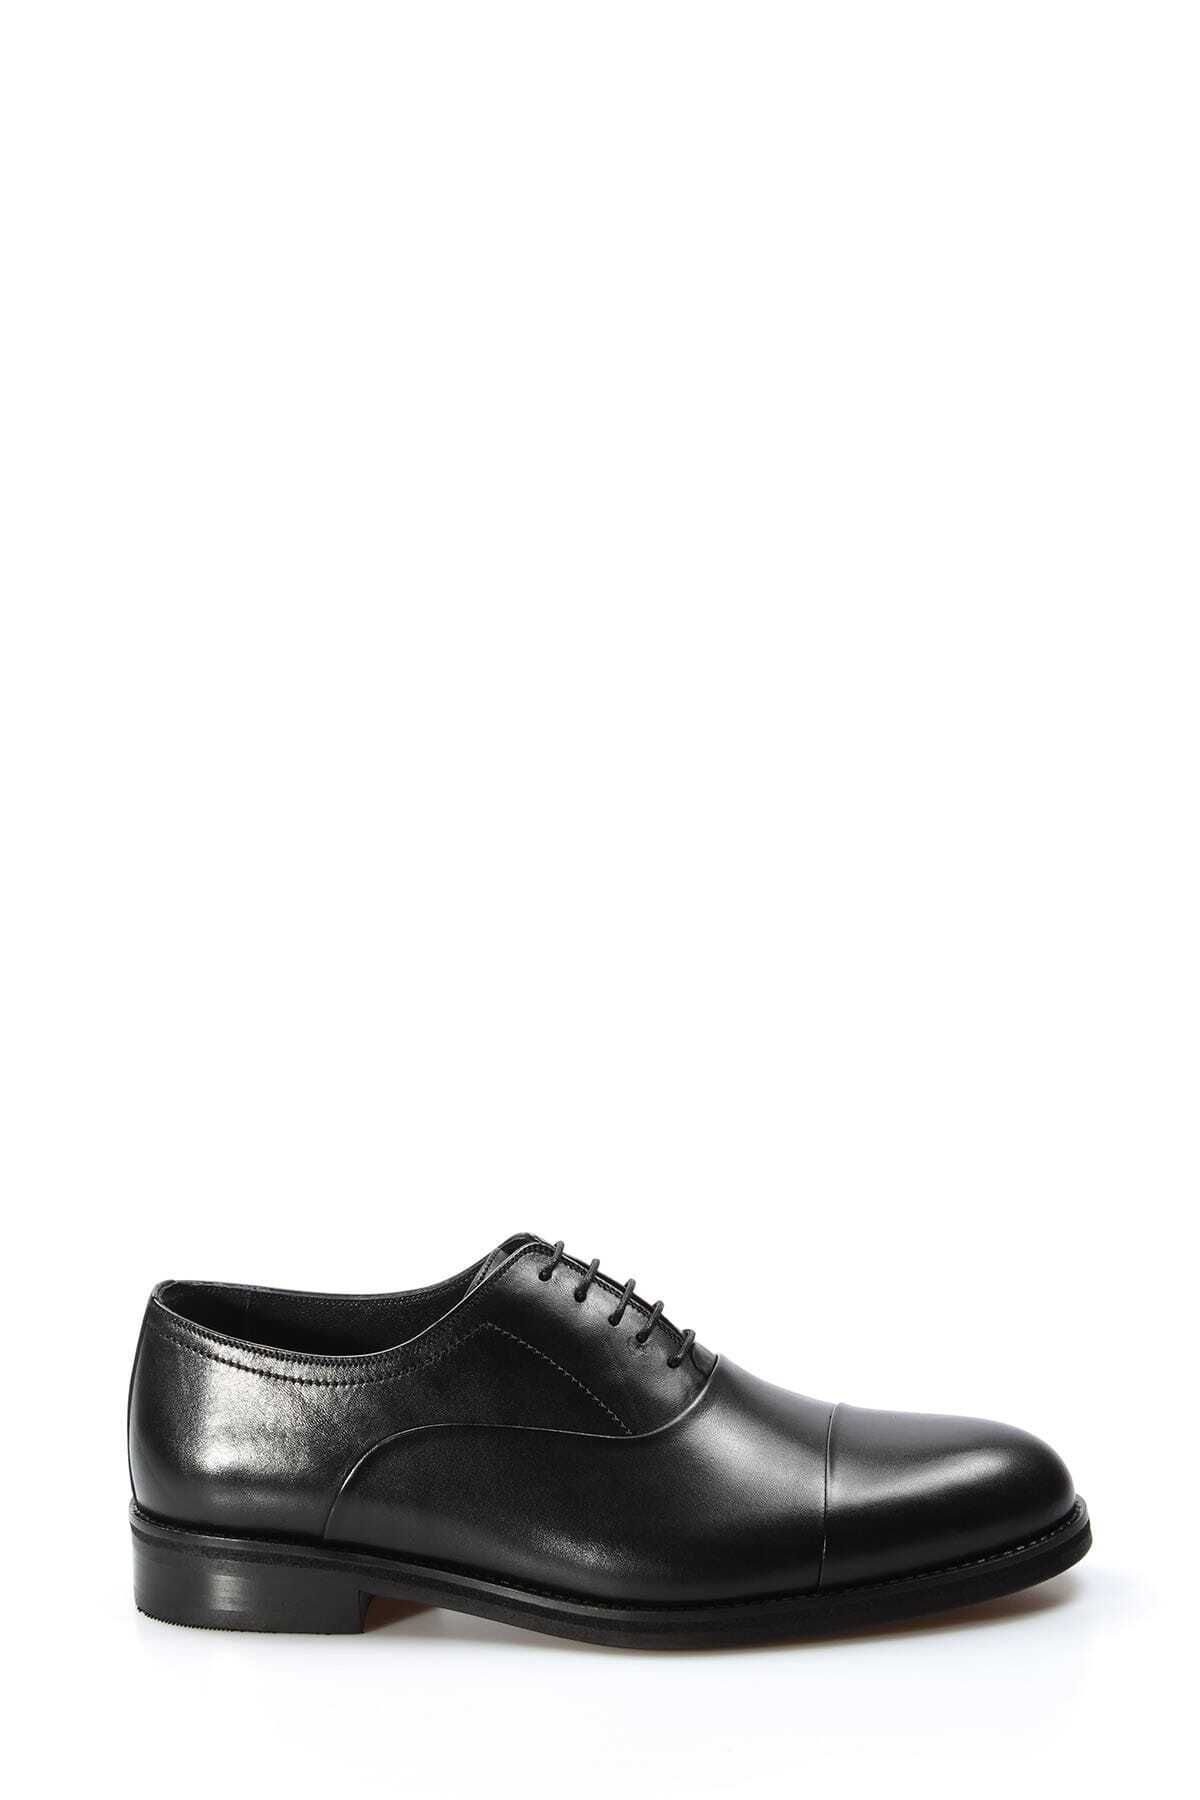 Fast Step Erkek Hakiki Deri Jurdan Taban Rahat Günlük Bağcıklı Klasik Ayakkabı Siyah 893ma075